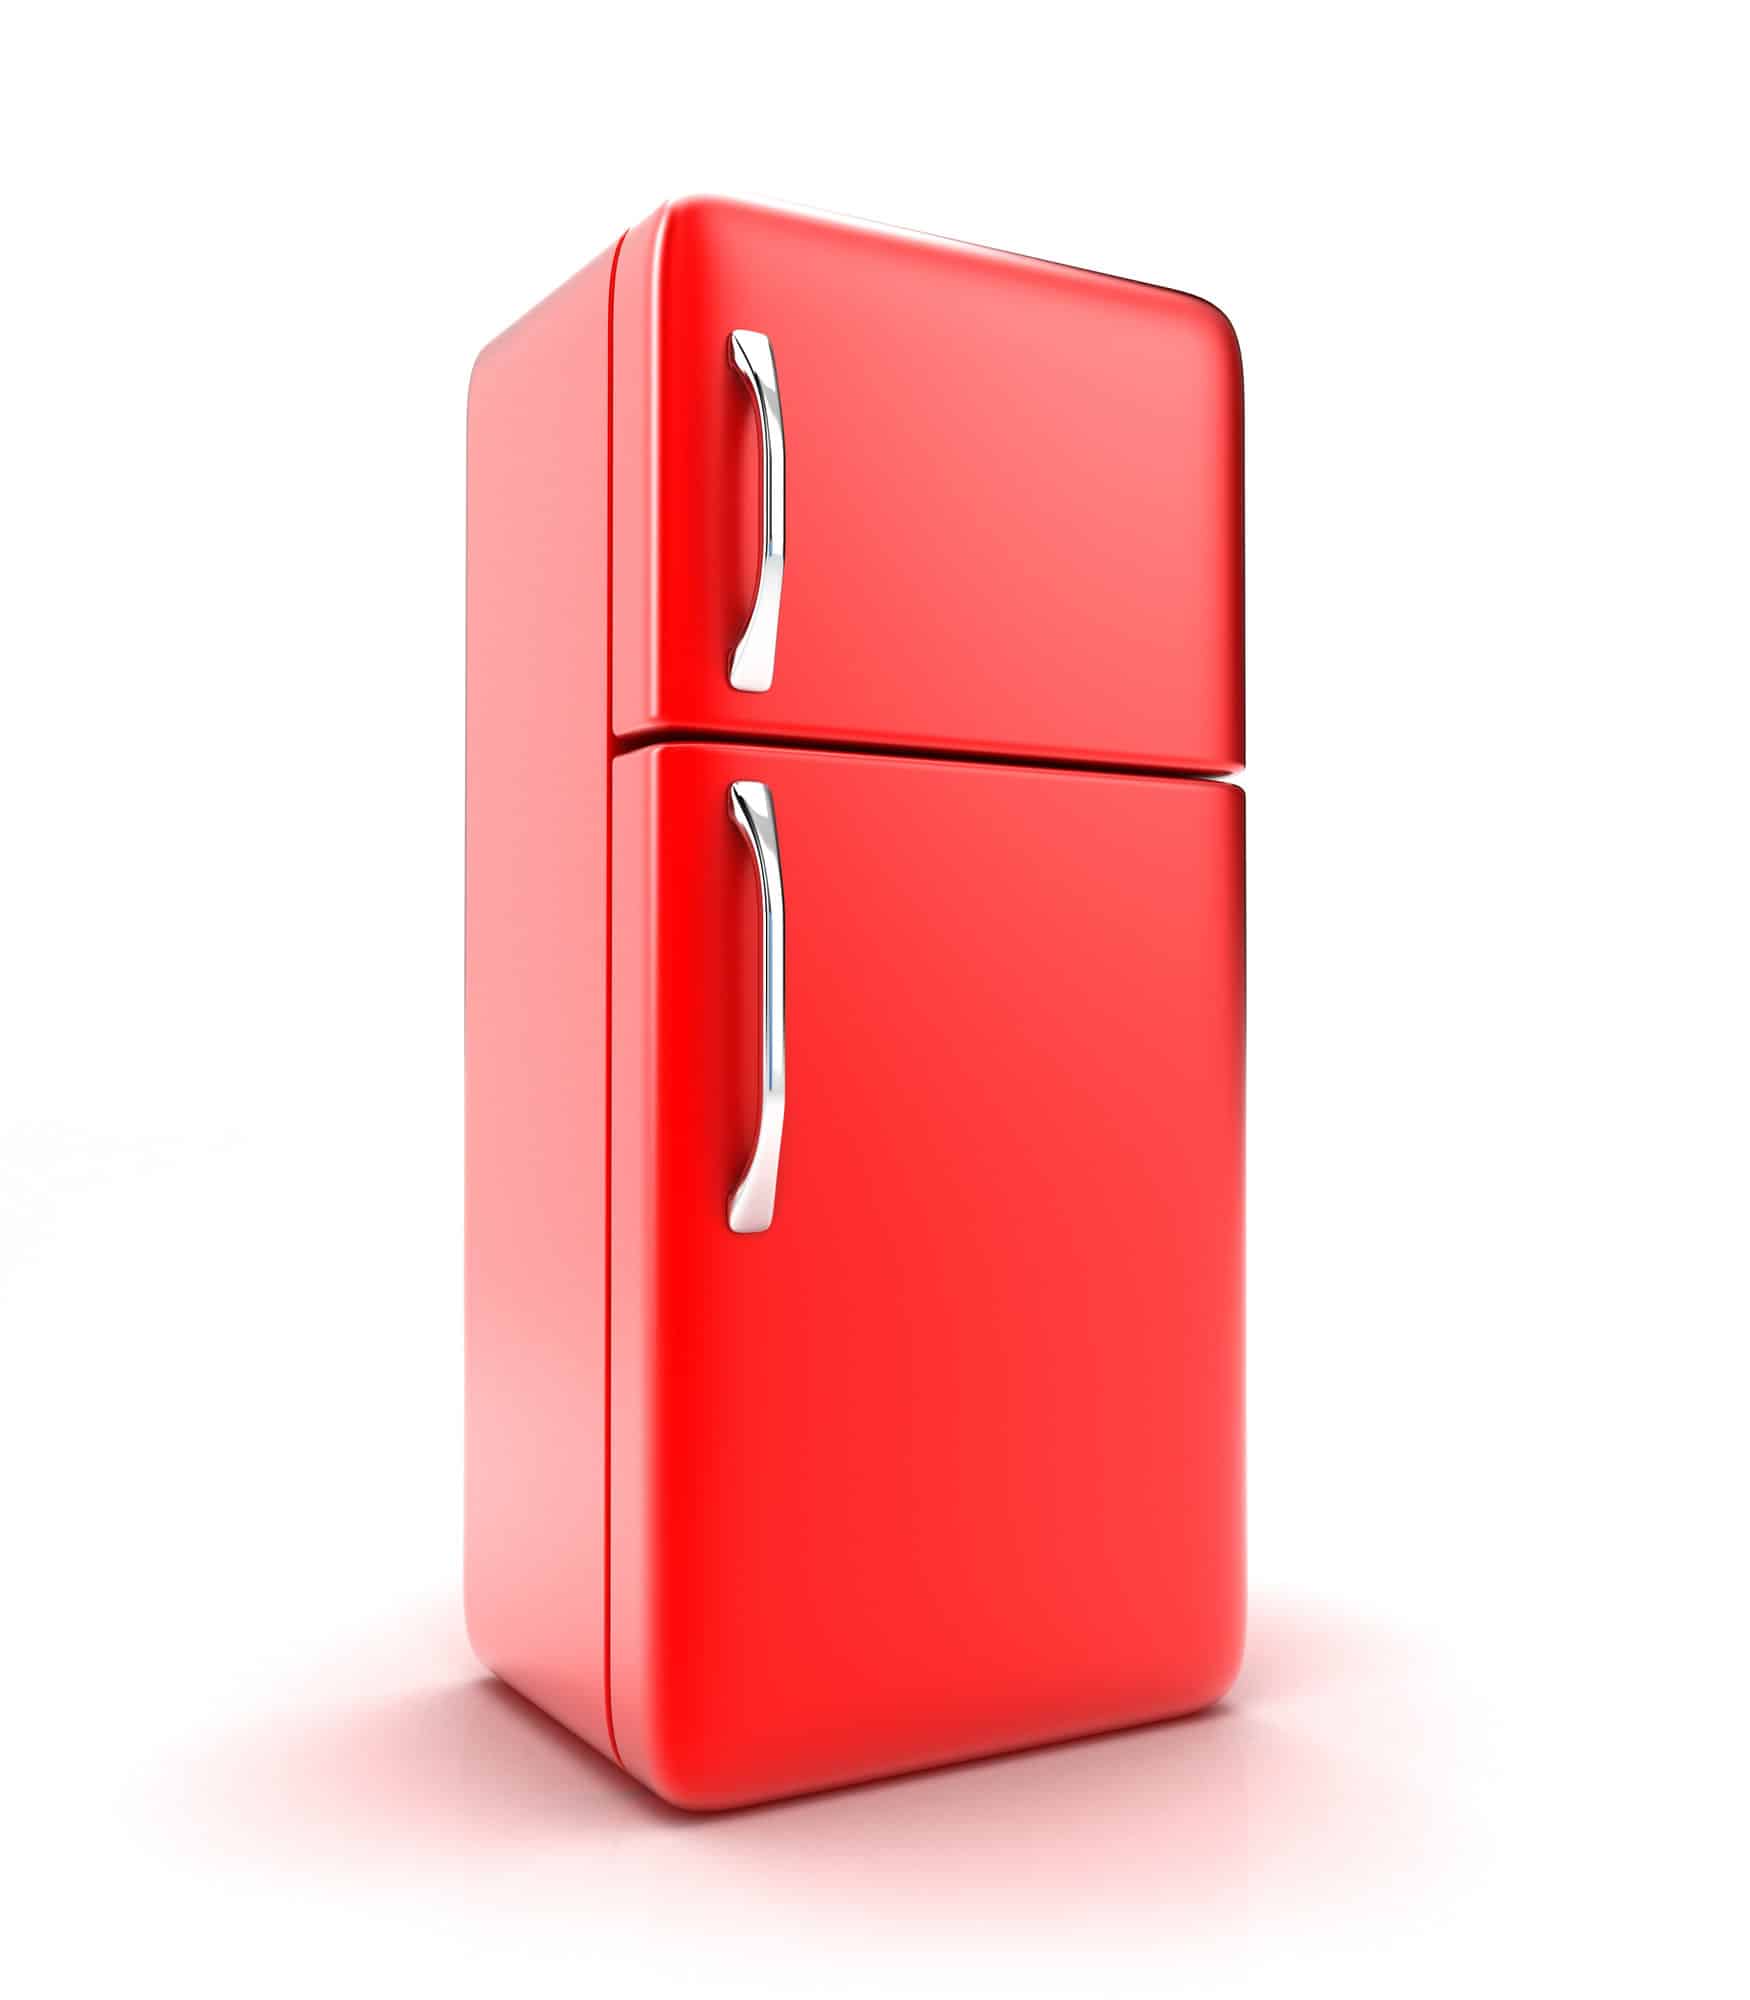 Le réfrigérateur peut à lui seul consommer pas mal d'éléctricité